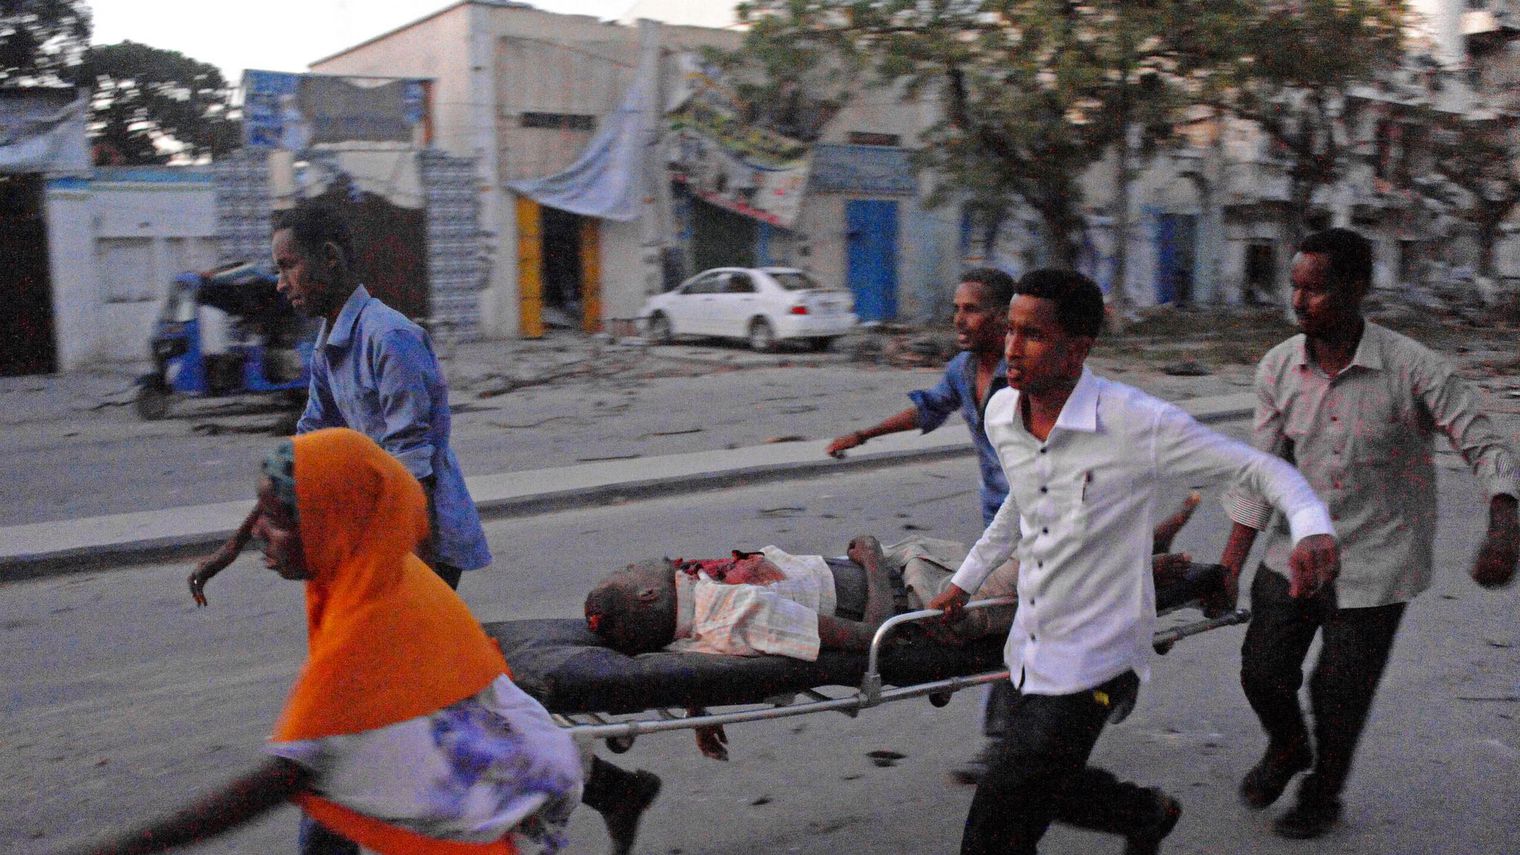 Somalie : Au moins cinq morts dans l’attaque d’un hôtel à Mogadiscio, revendiquée par les shebabs